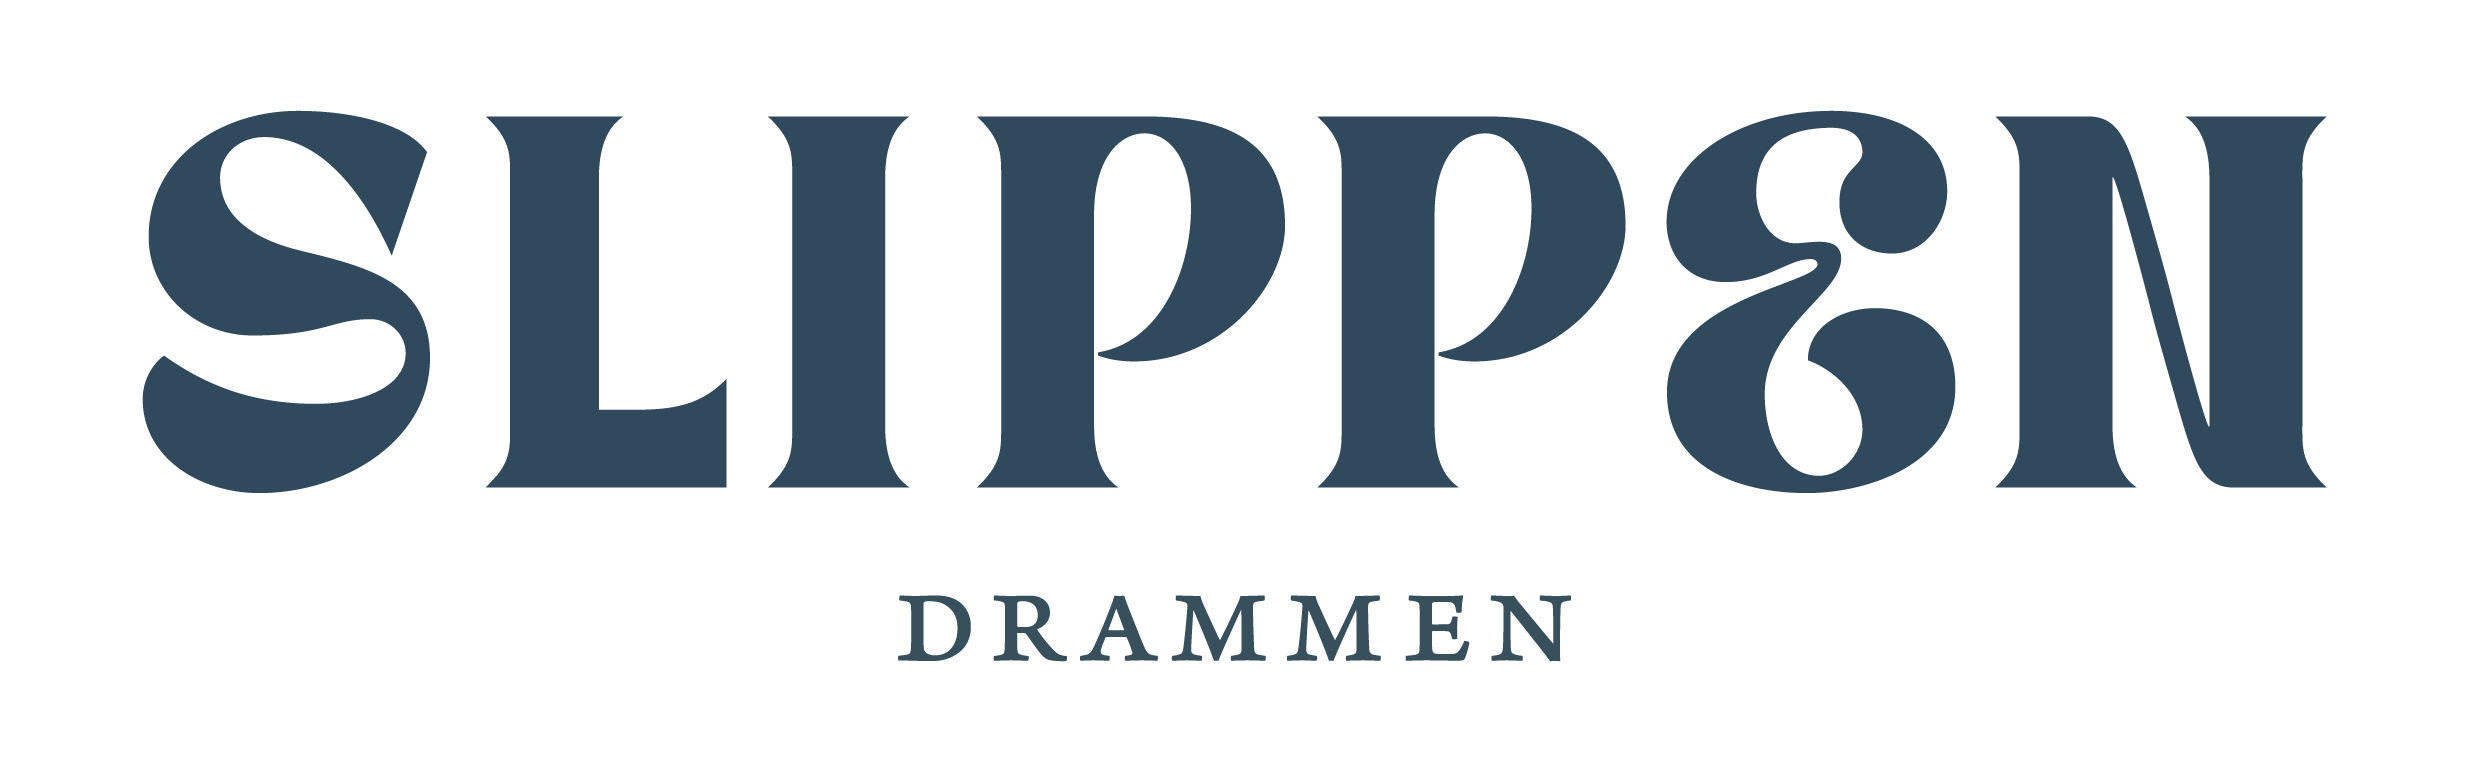 The logo for Slippen.